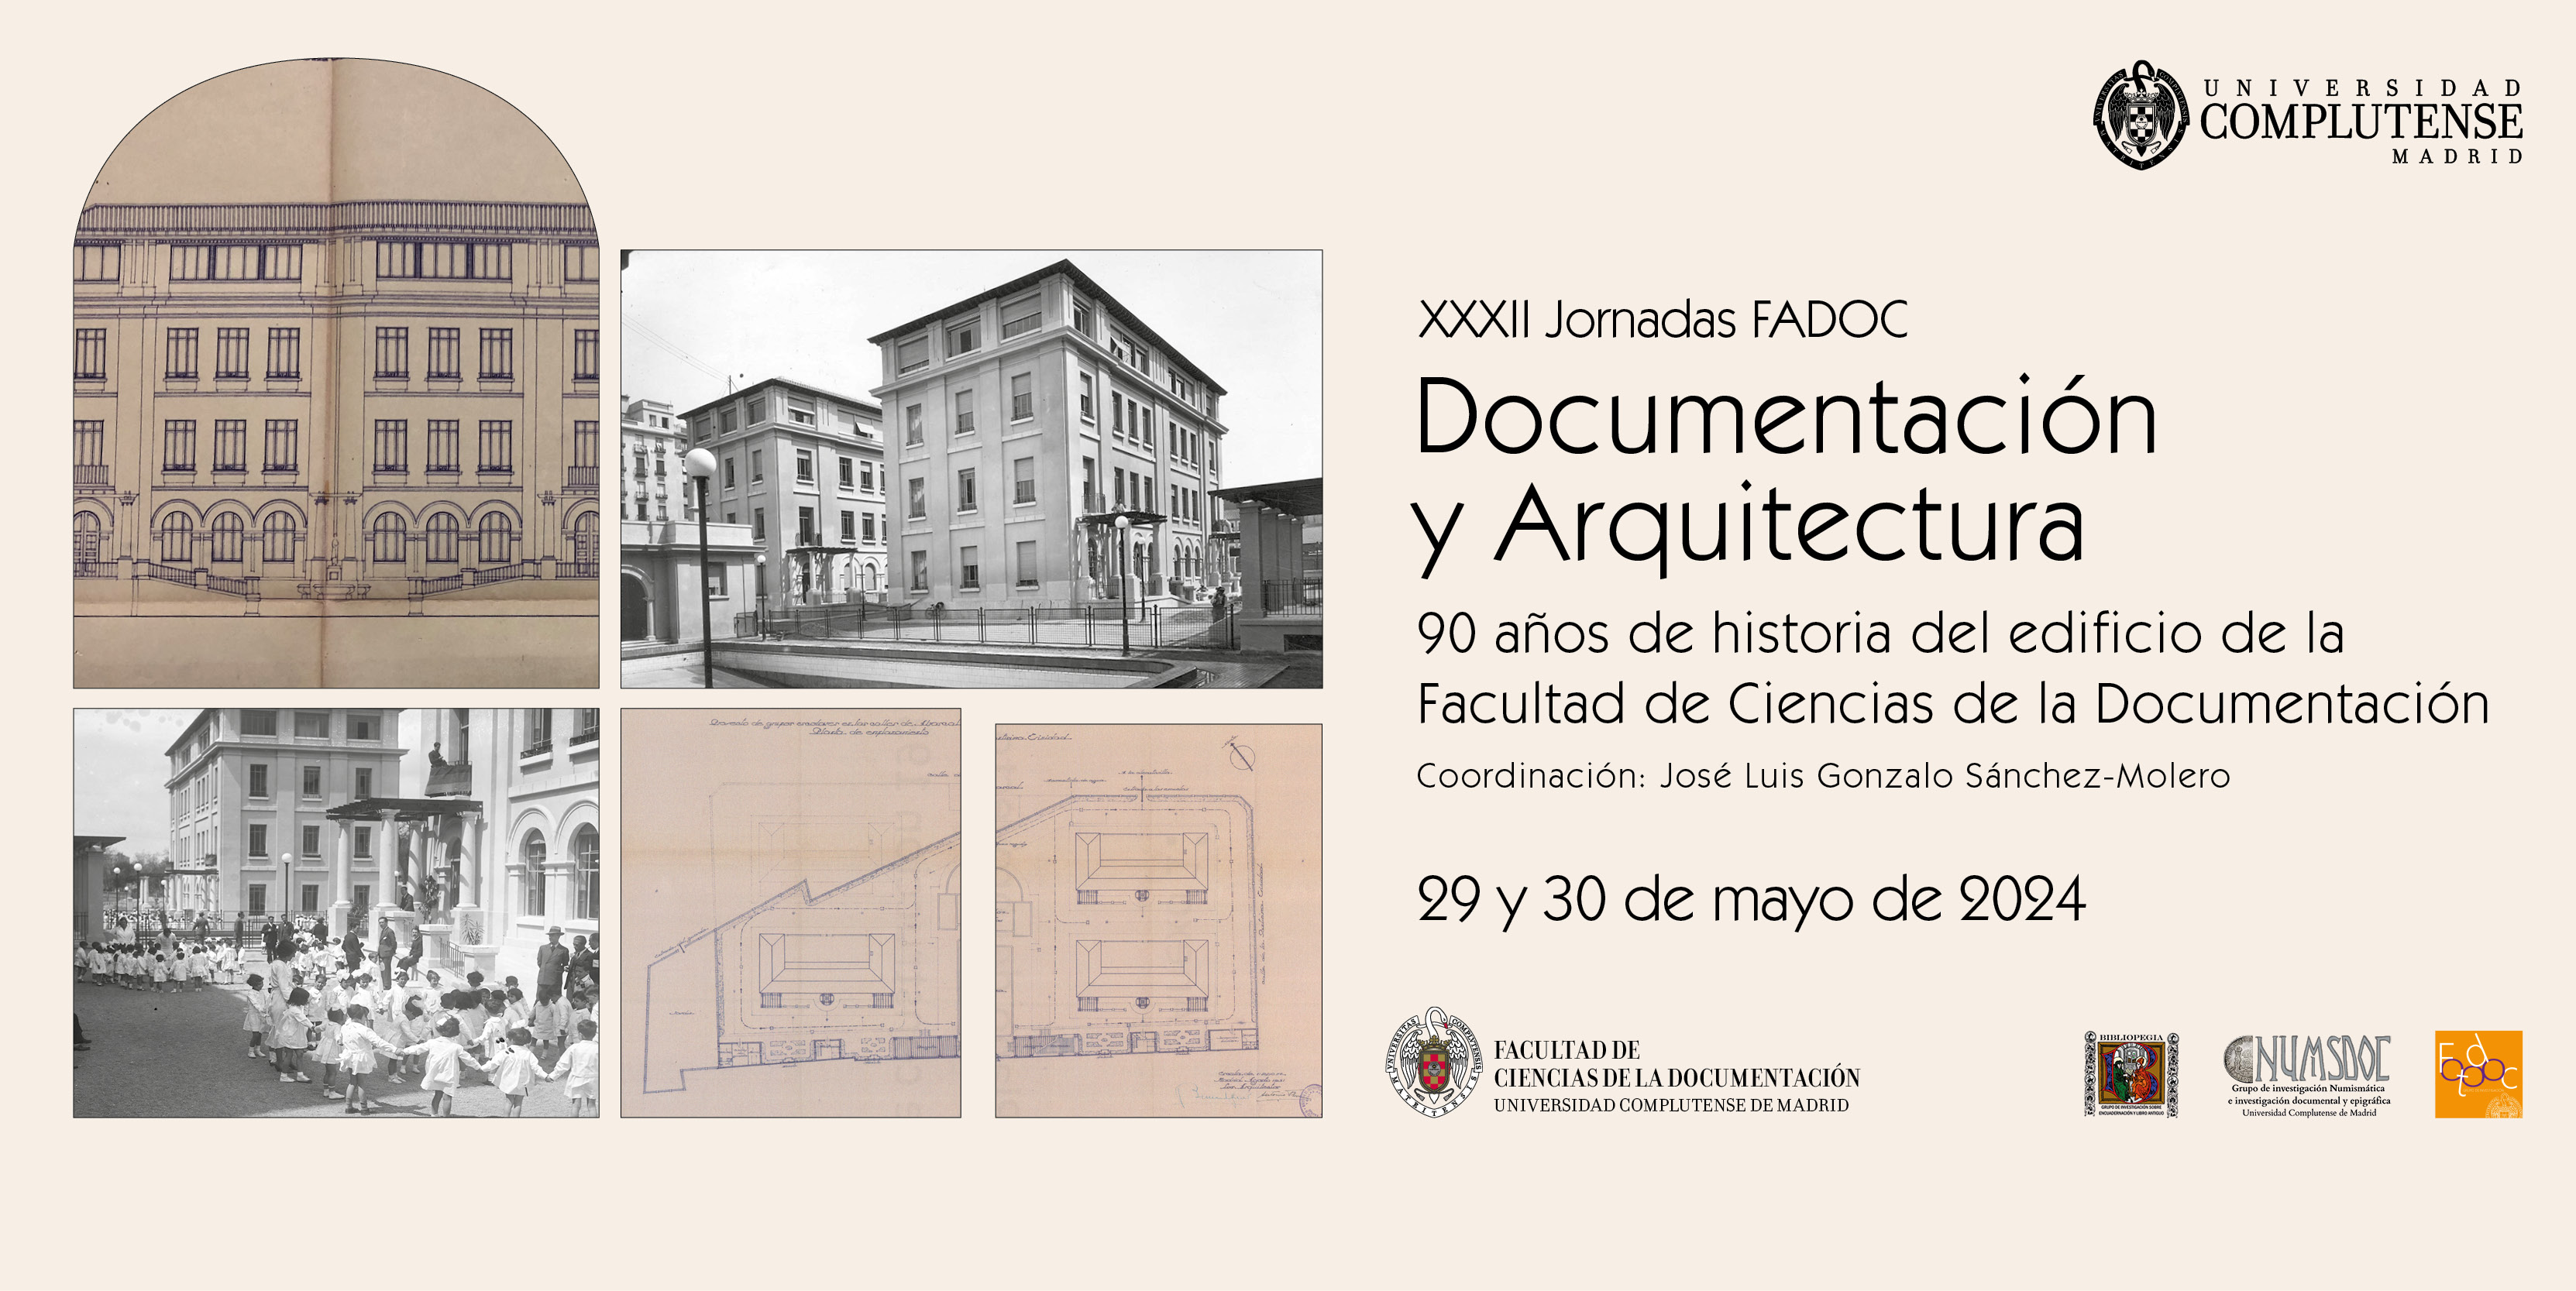 XXXII Jornadas FADOC, "Documentación y Arquitectura. 90 años de historia del edificio de la Facultad de Ciencias de la Documentación"